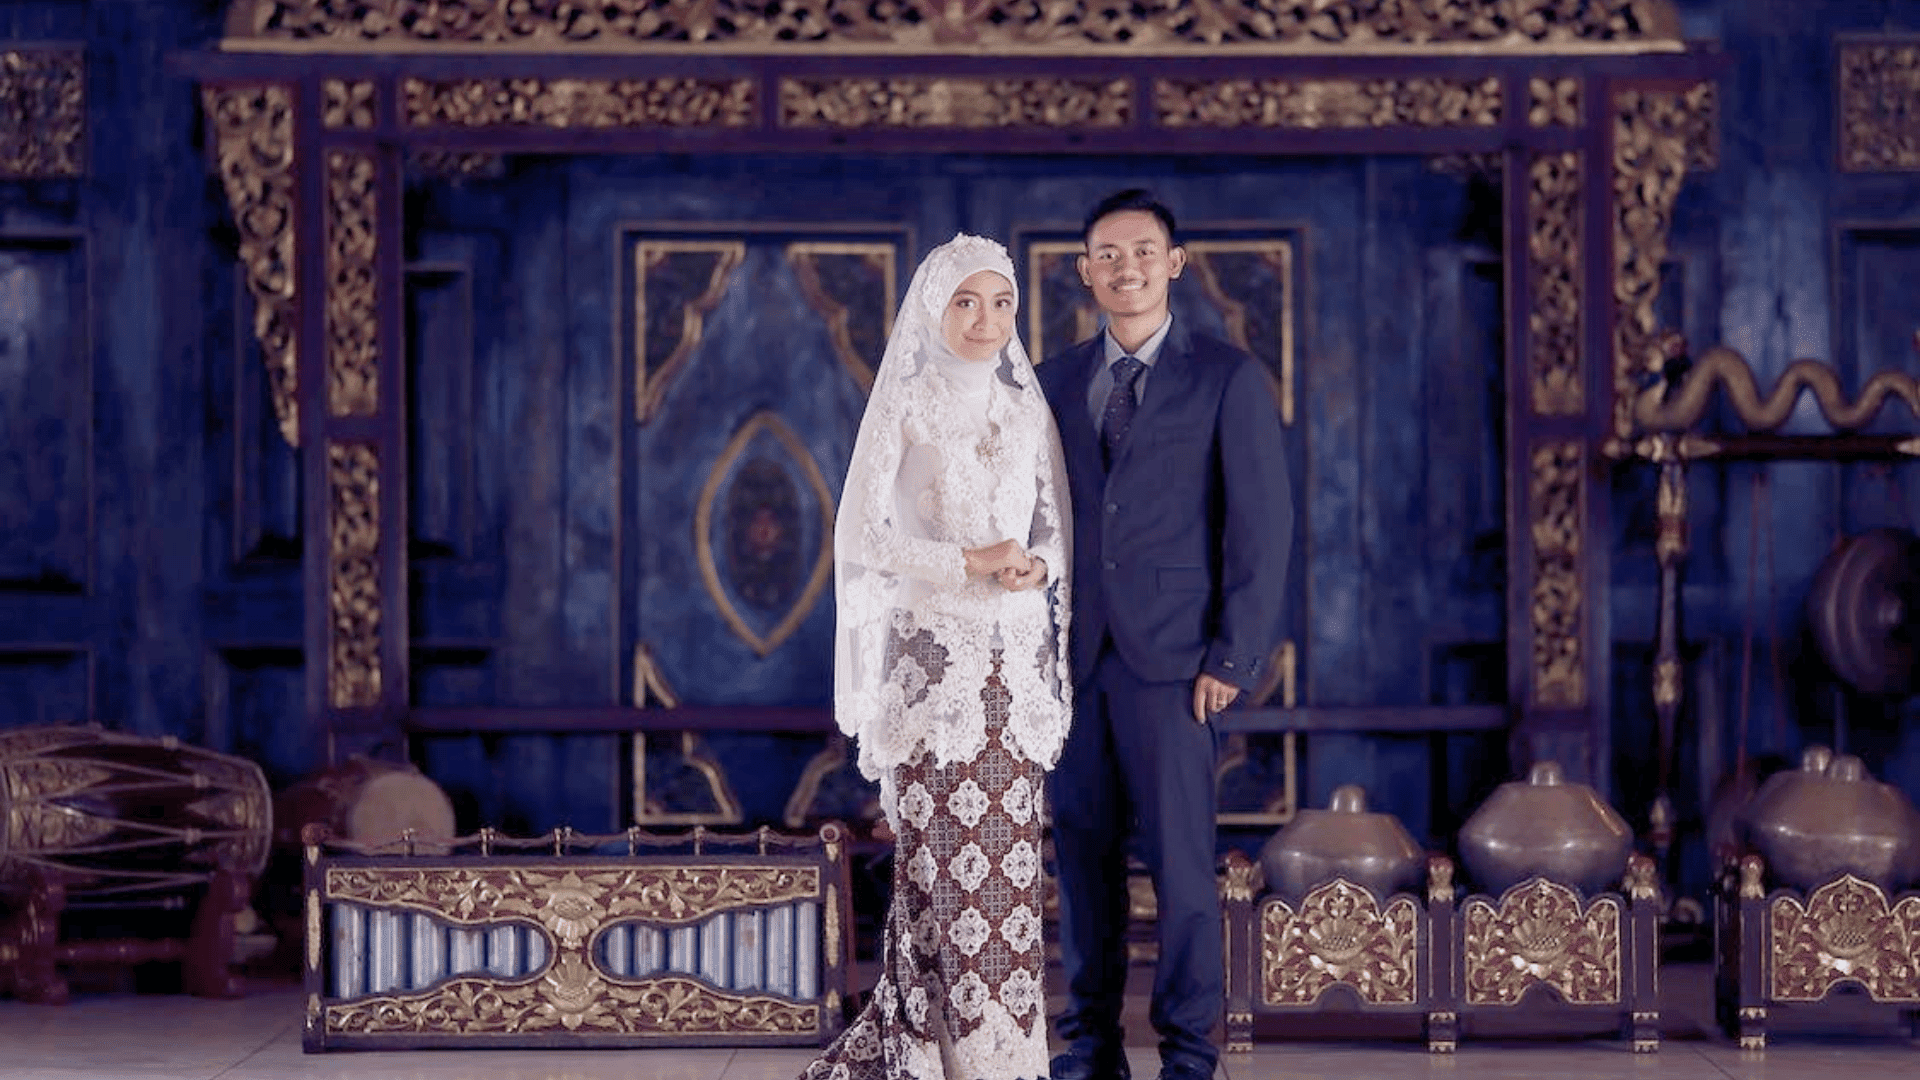 wedding wedding guest wedding guest mistake wedding mistake malaysia wedding malaysia bride